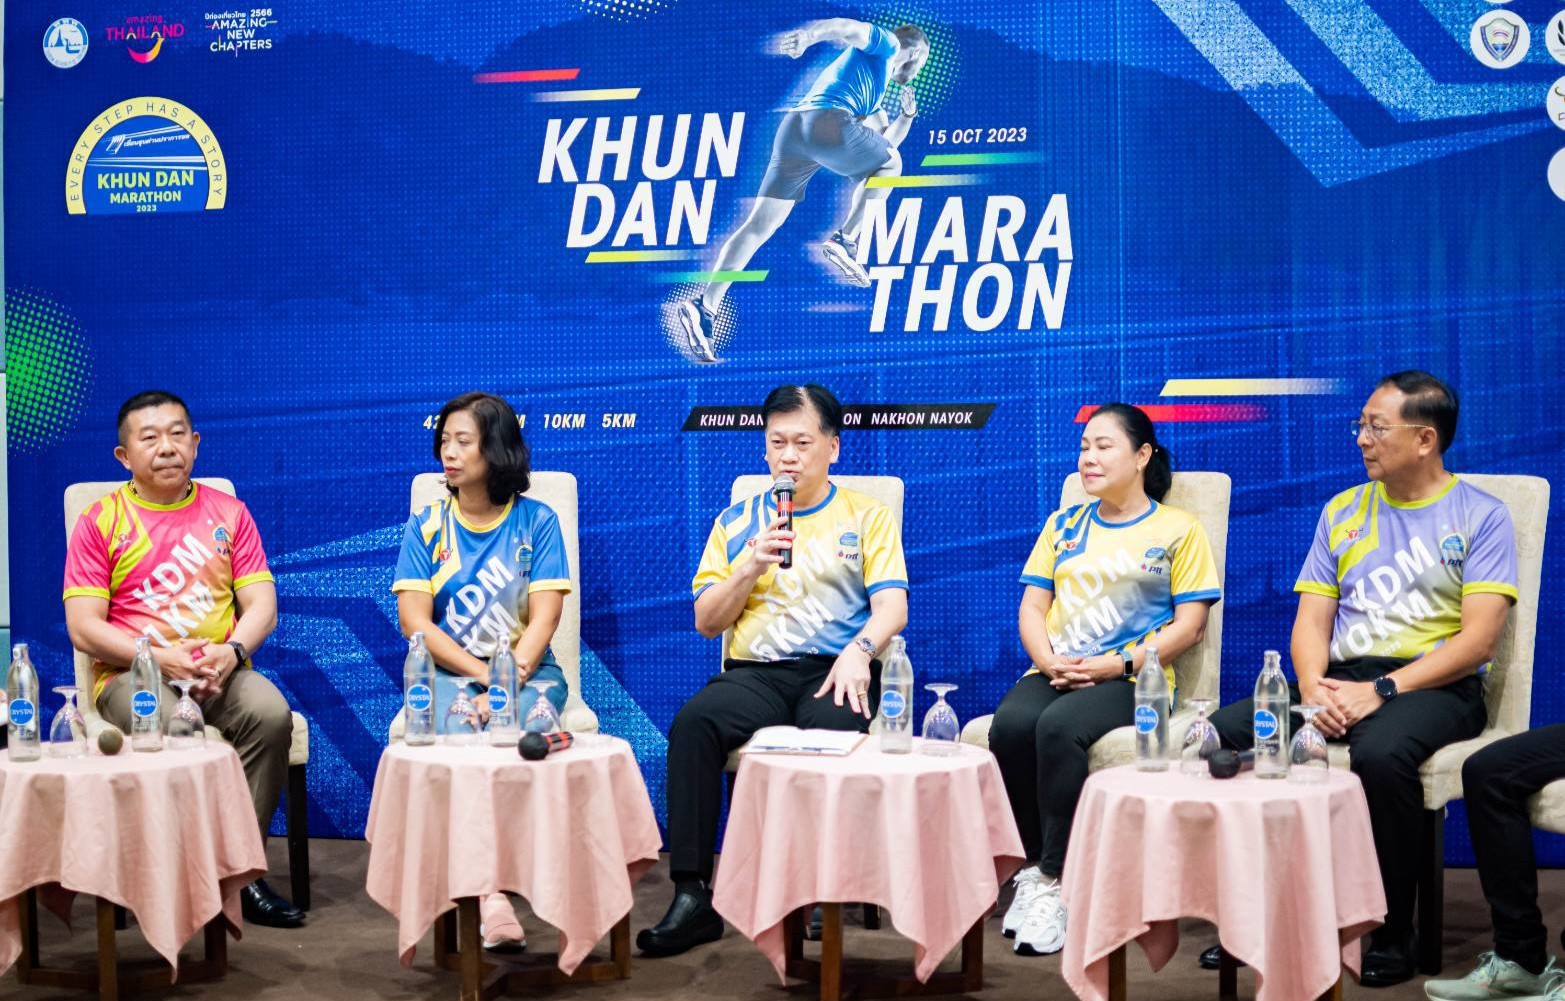 นครนายก-แถลงข่าว Khun Dan Marathon 2023 รางวัลถ้วยพระราชทาน